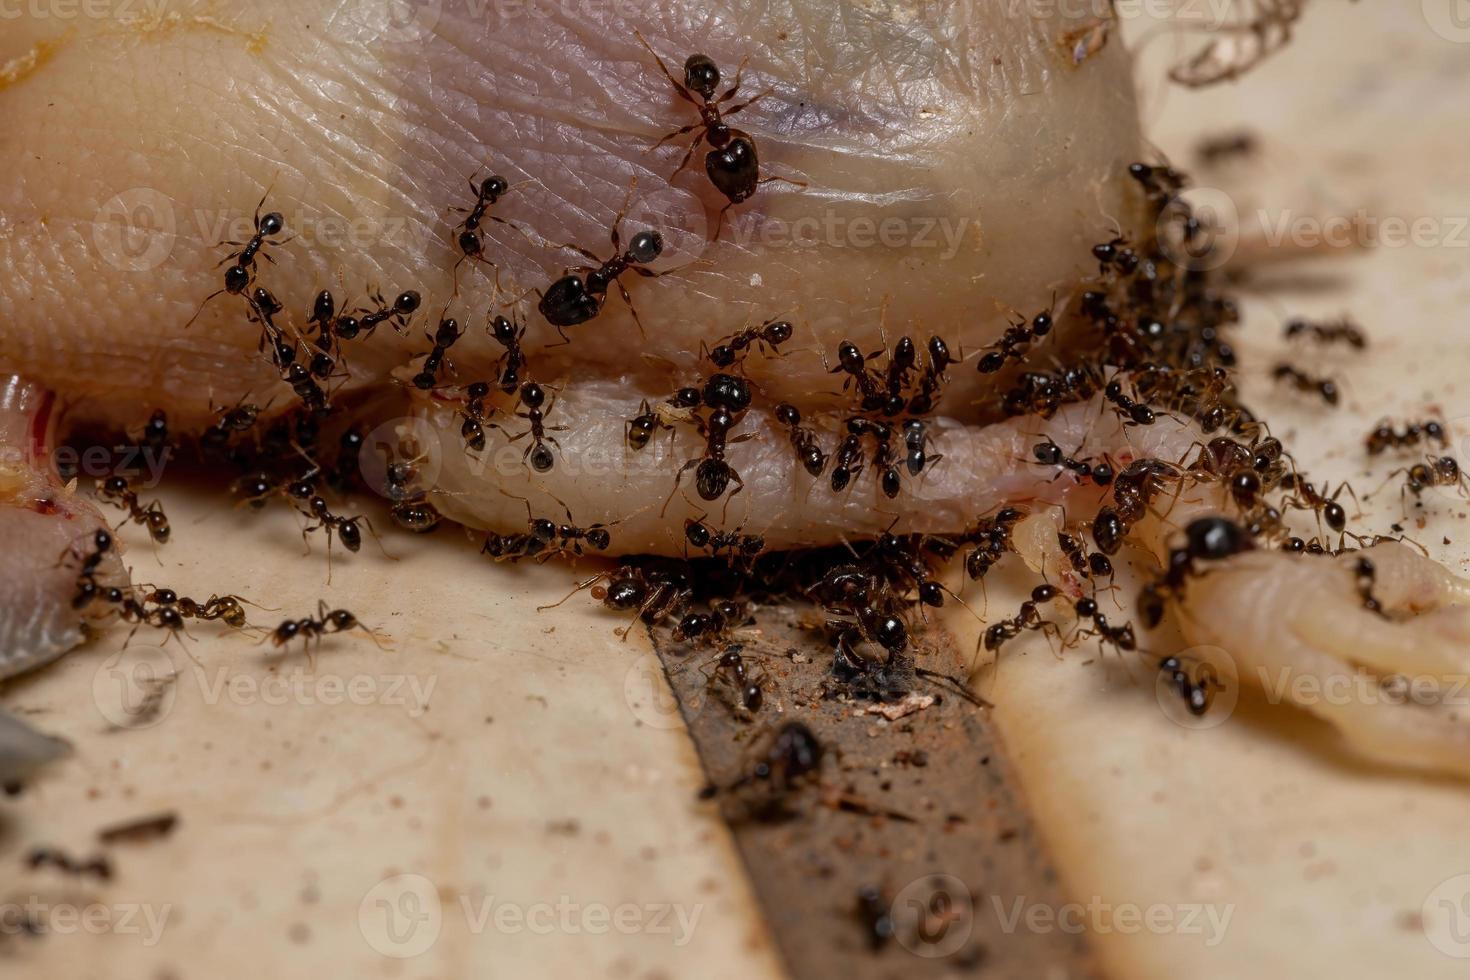 formigas atacando um pássaro morto foto